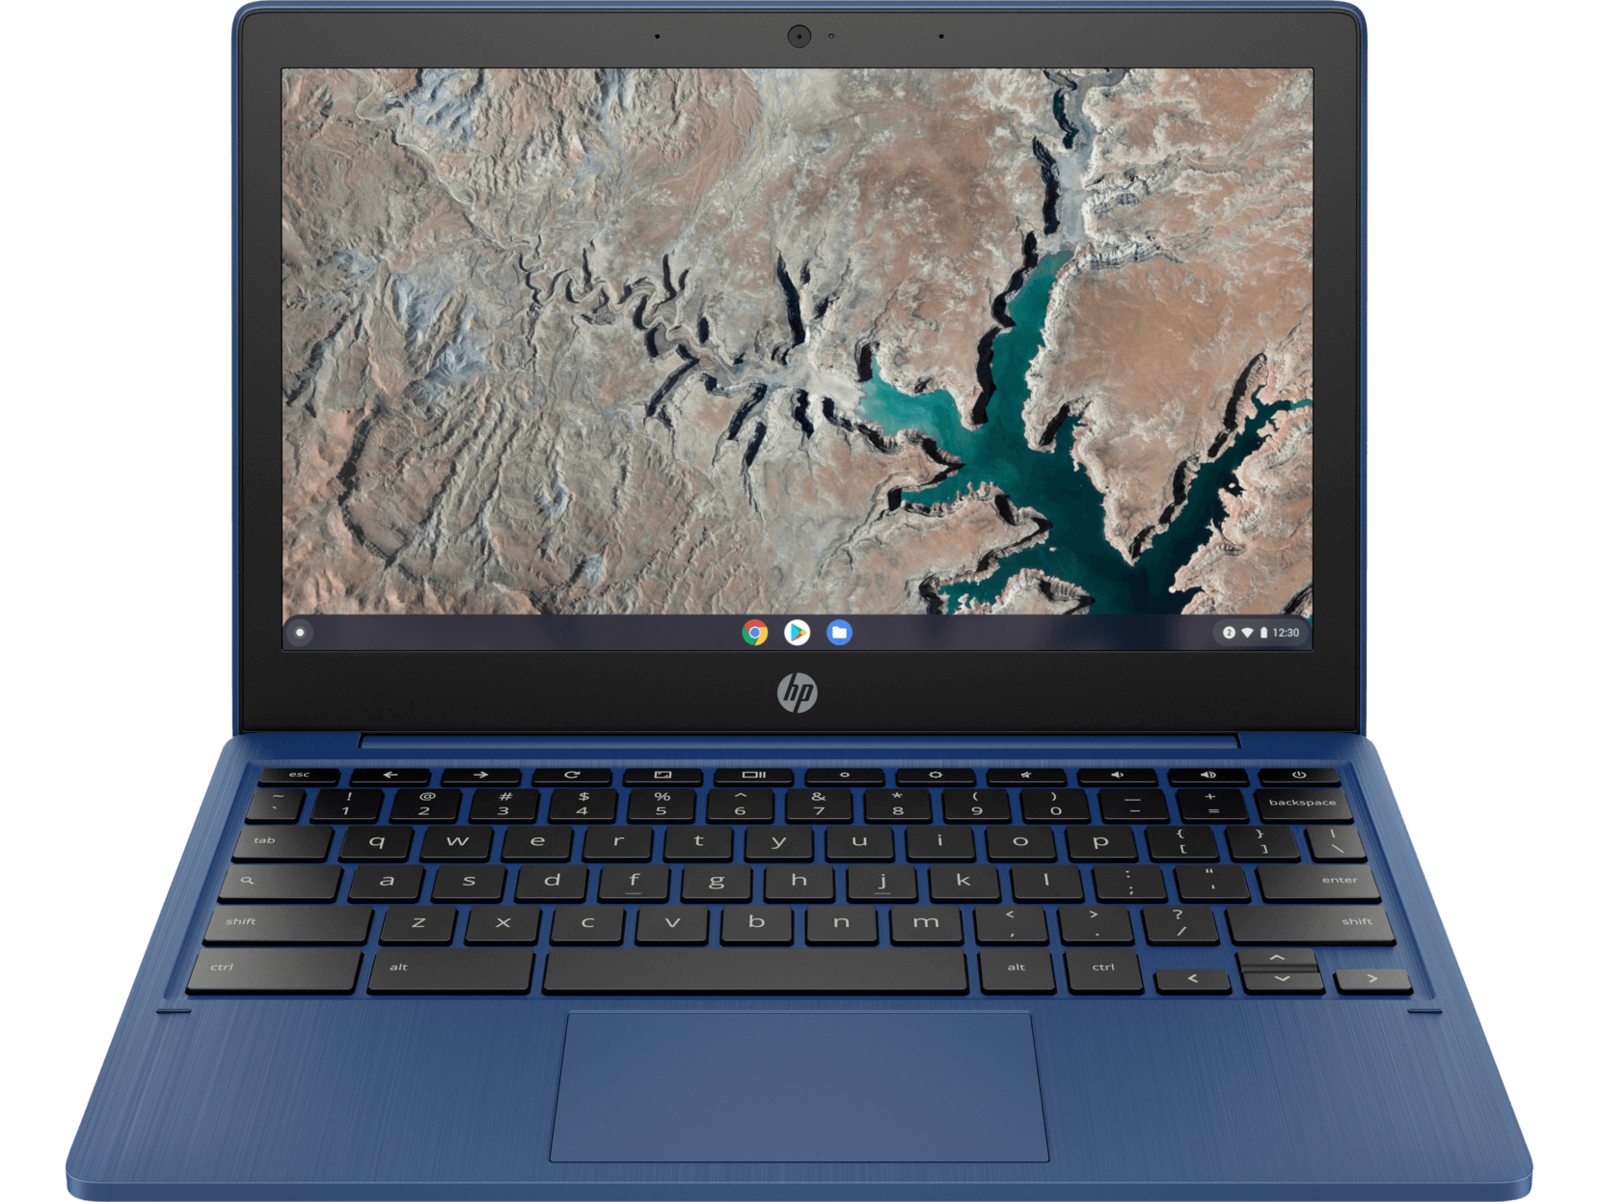 لابتوب HP Chromebook 11a من افضل لابتوبات رخيصة